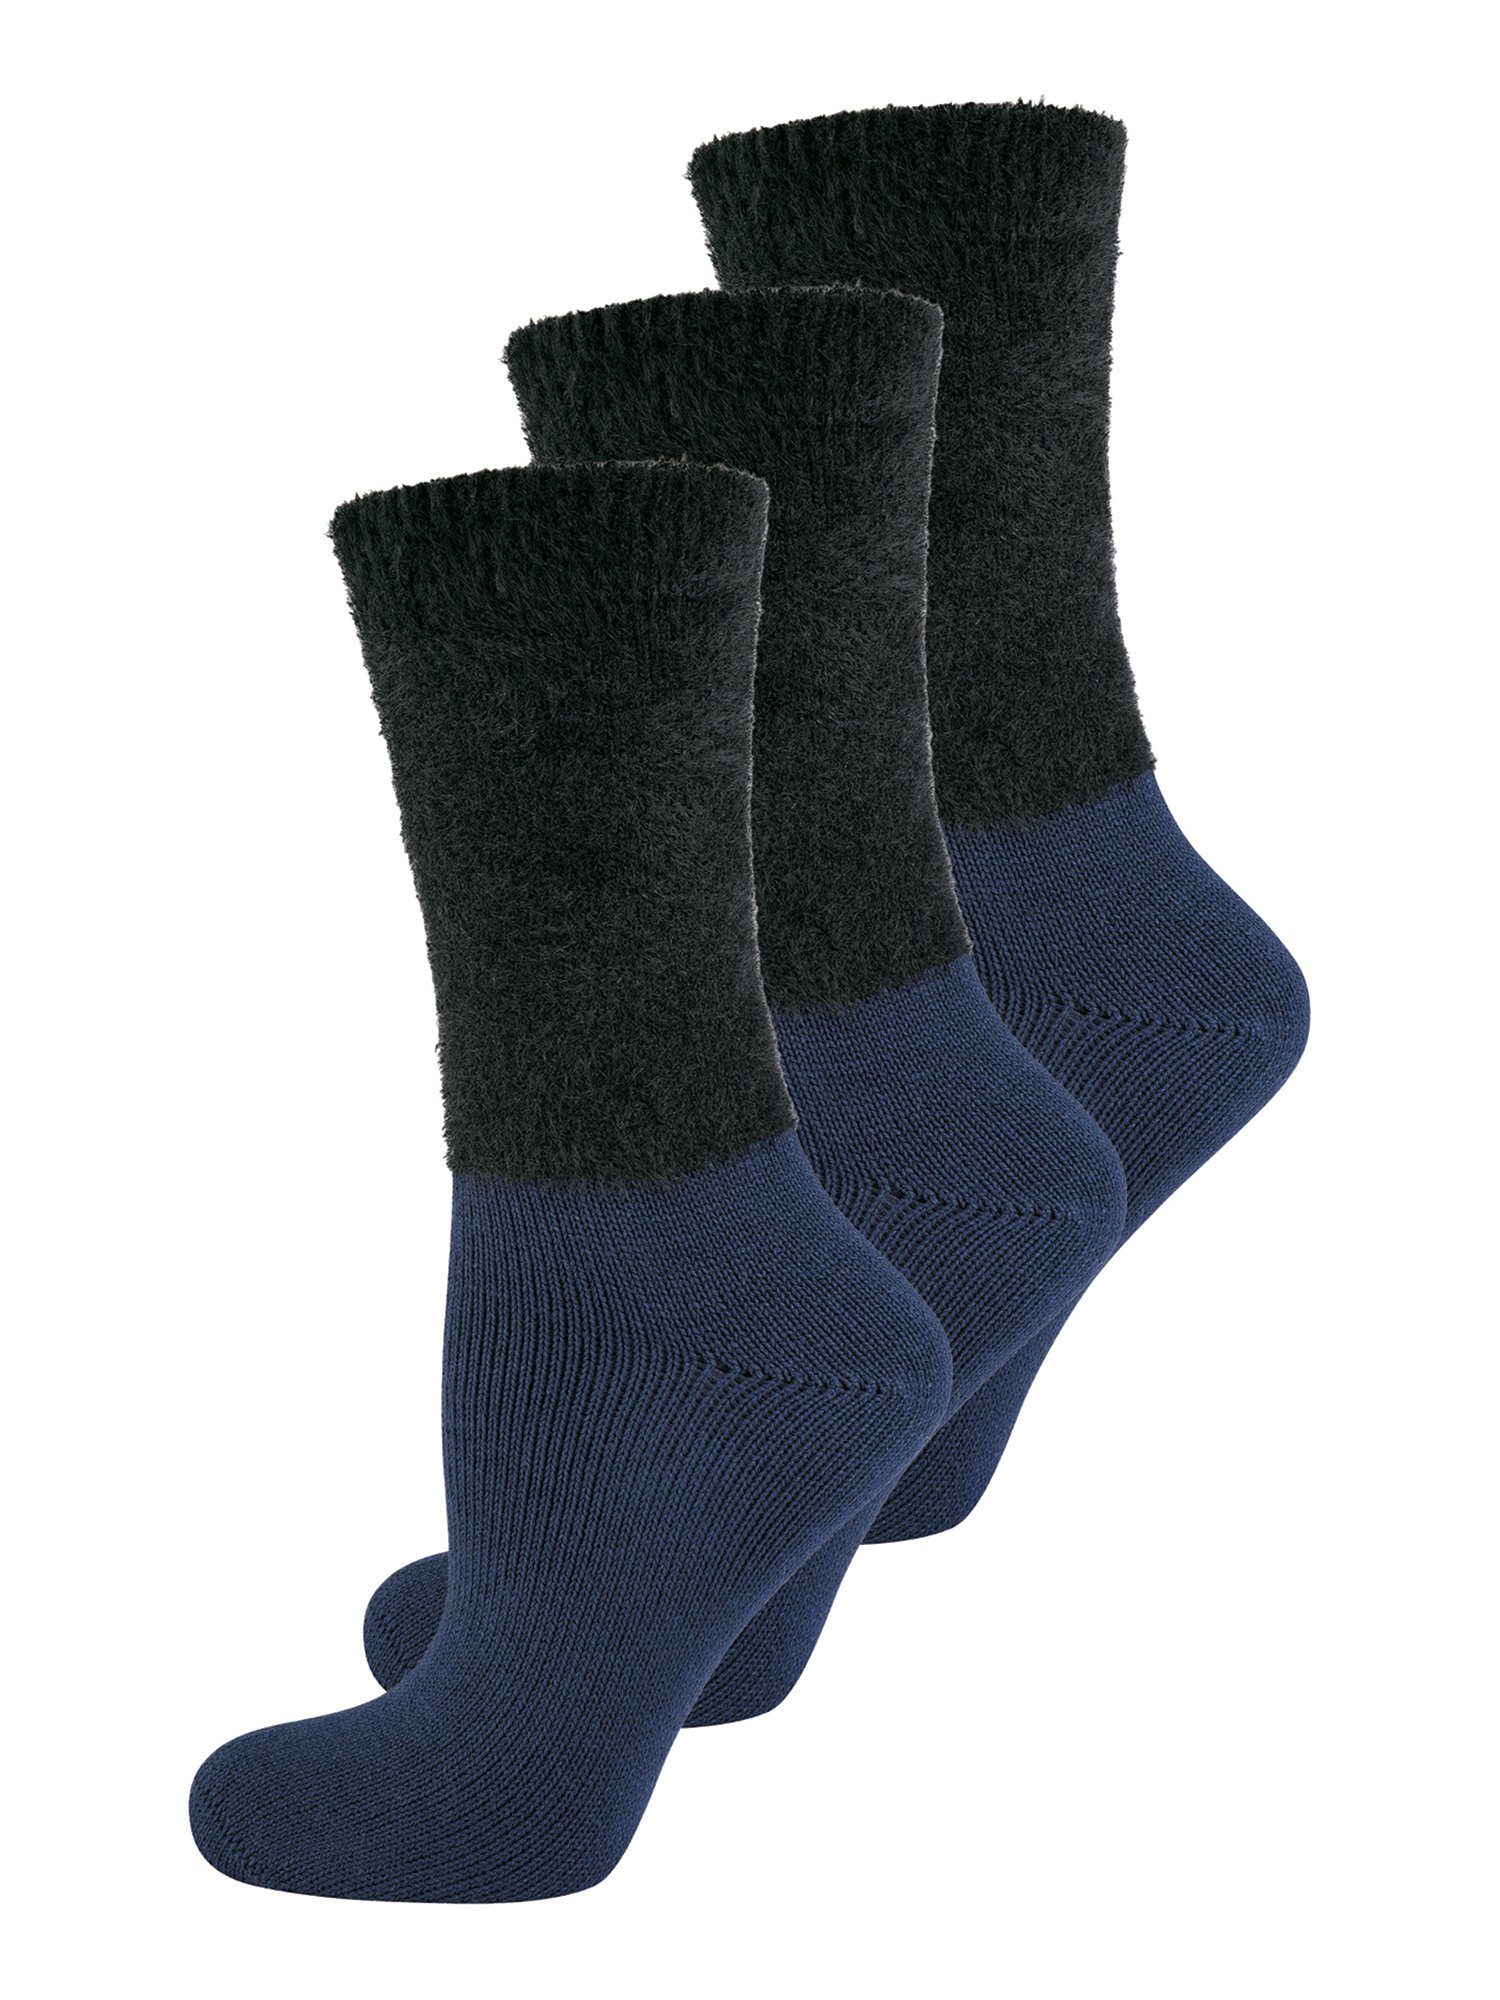 Elbeo Damen Socken online kaufen | OTTO